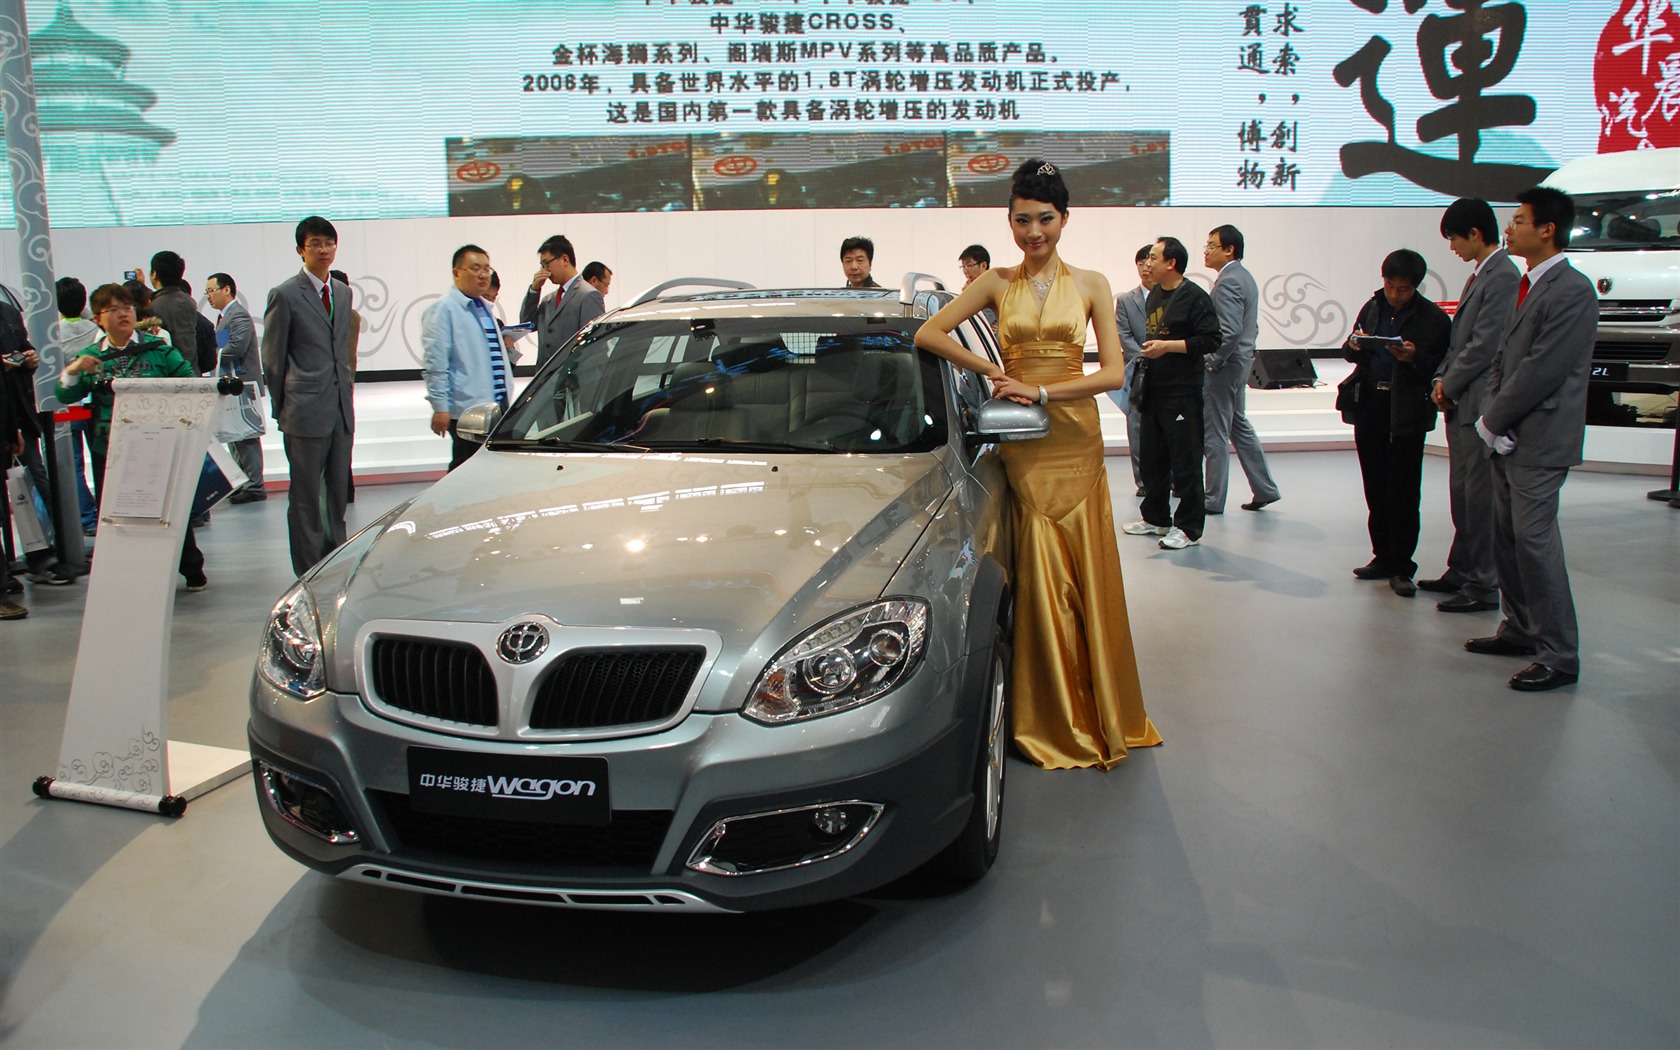 2010 Beijing International Auto Show (1) (z321x123 works) #18 - 1680x1050